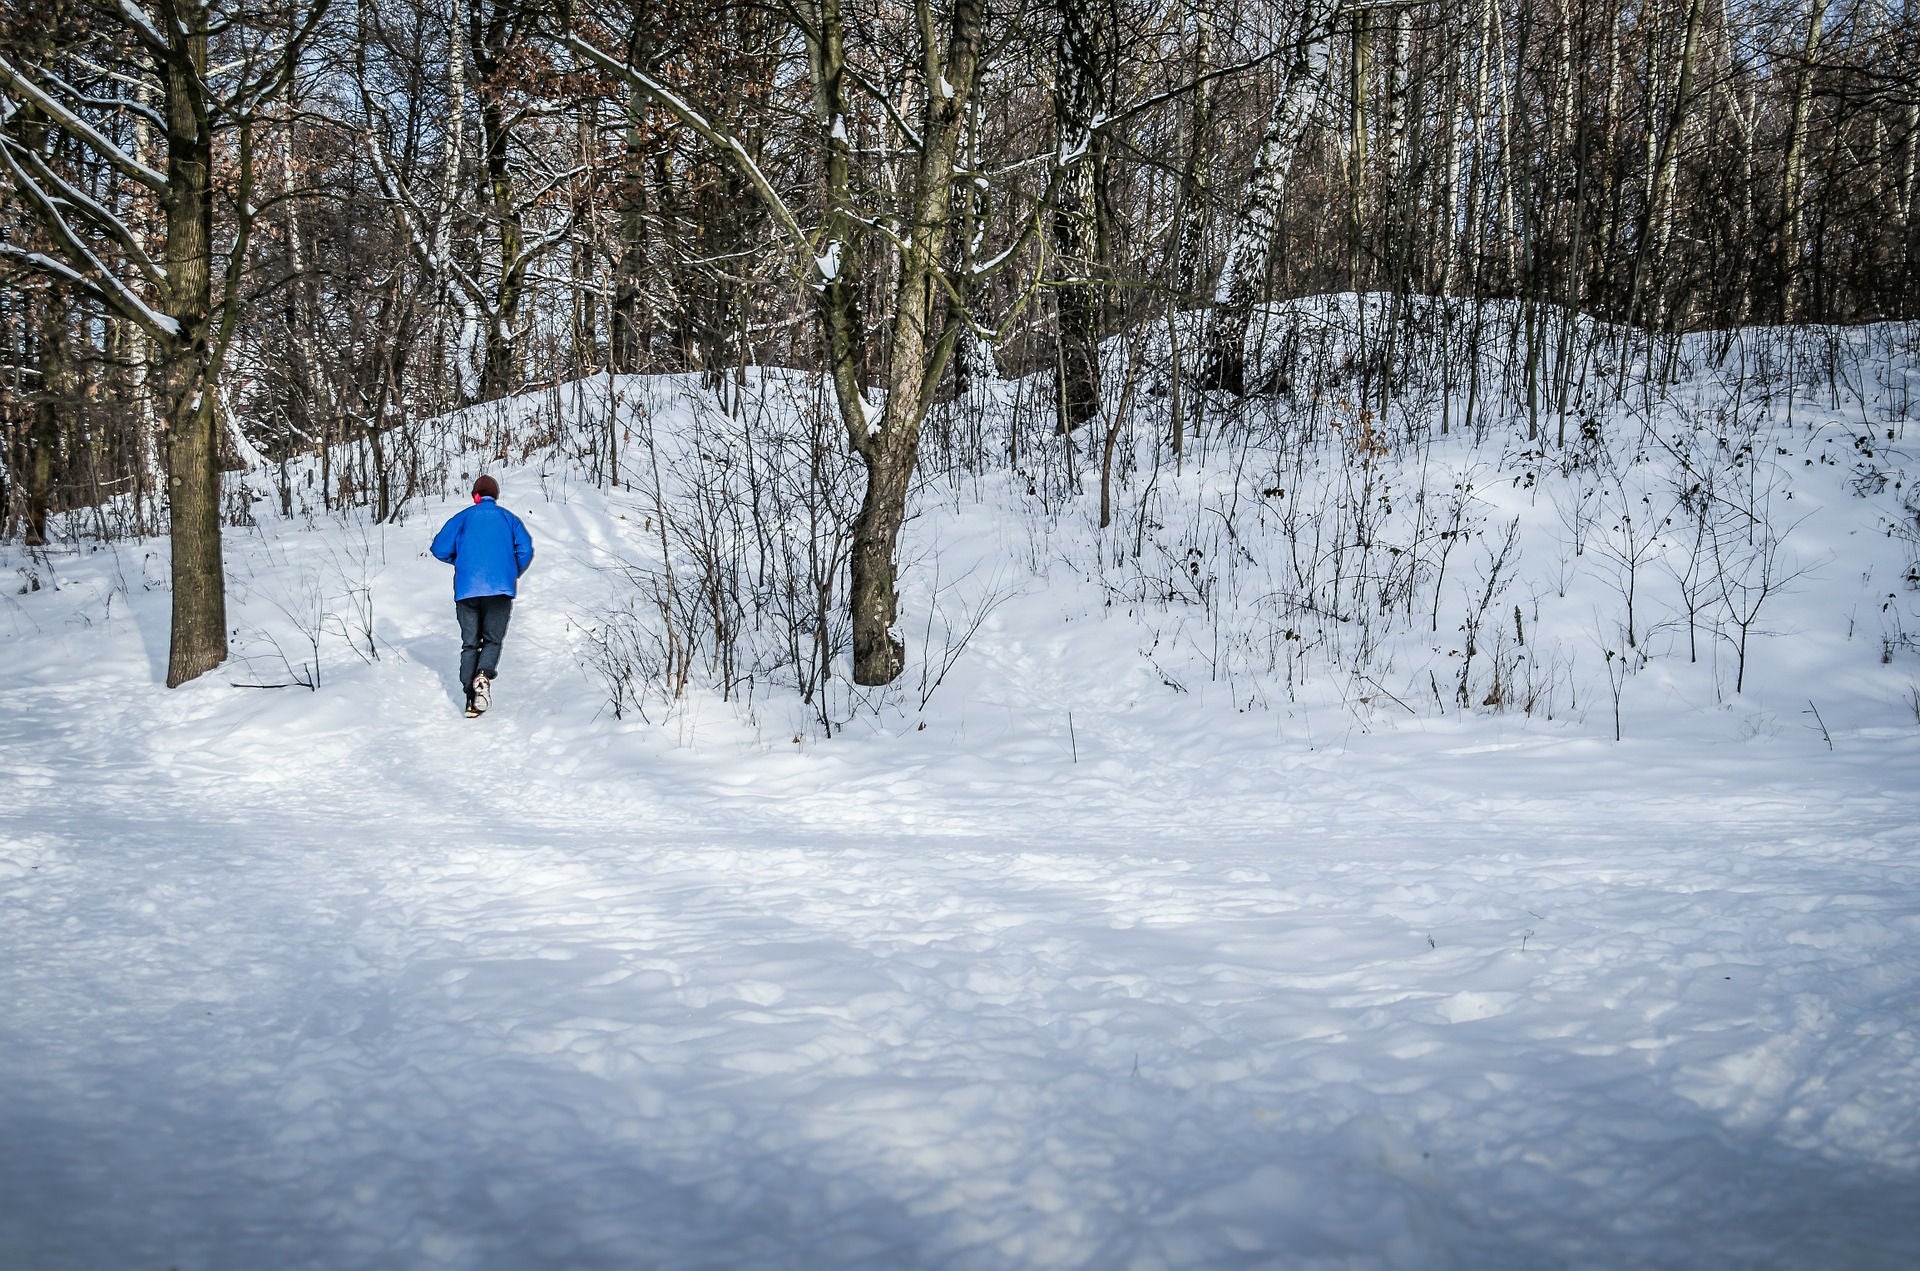 Correre in inverno può essere divertente, se prendi nota di alcuni suggerimenti di base.